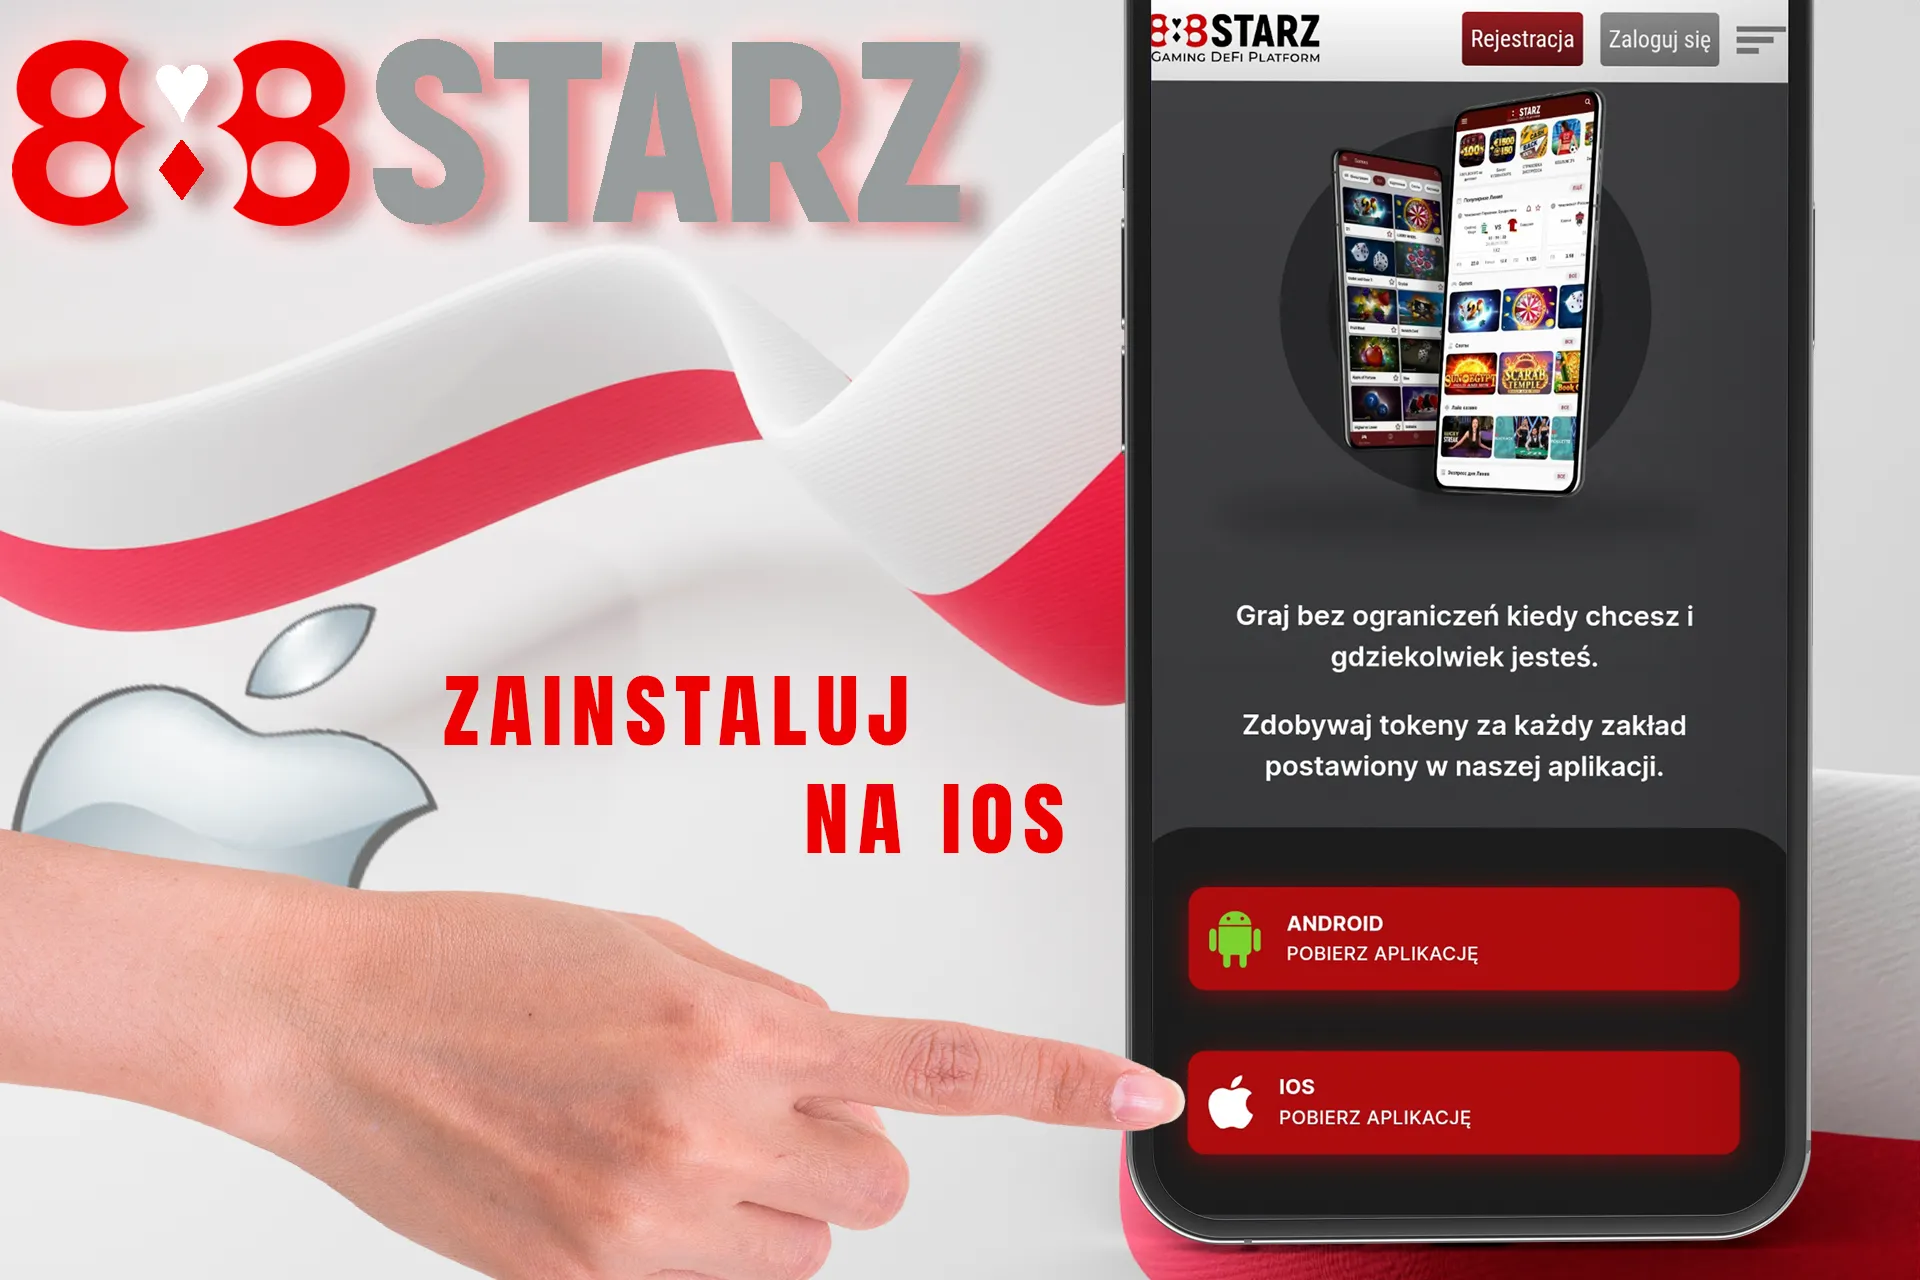 Zainstaluj aplikację mobilną 888Starz na iOS